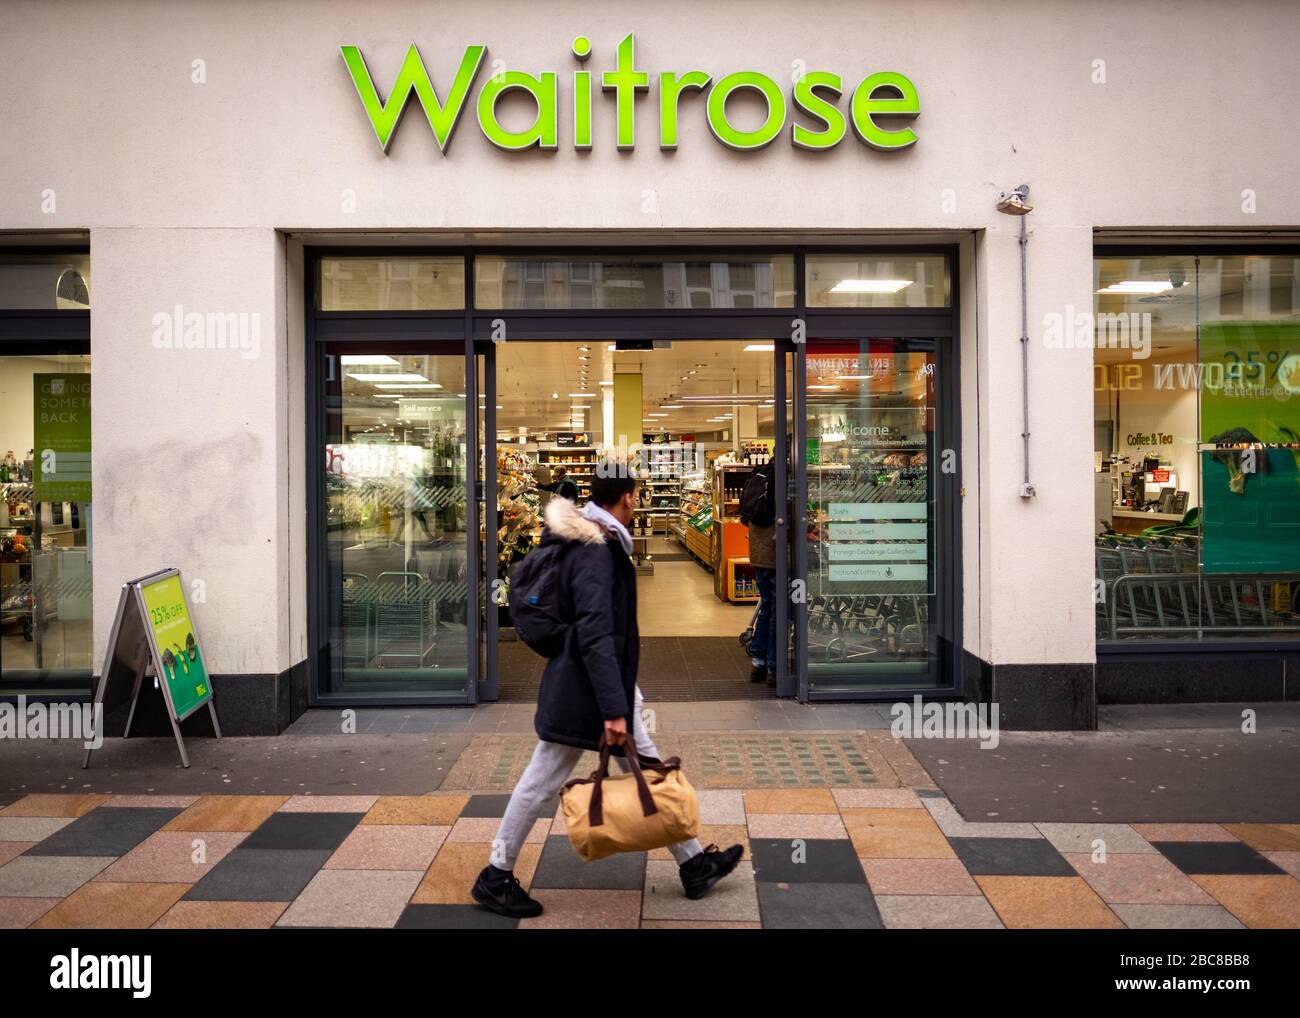 Waitrose - catena britannica di supermercati- logo esterno / segnaletica- Londra Foto Stock